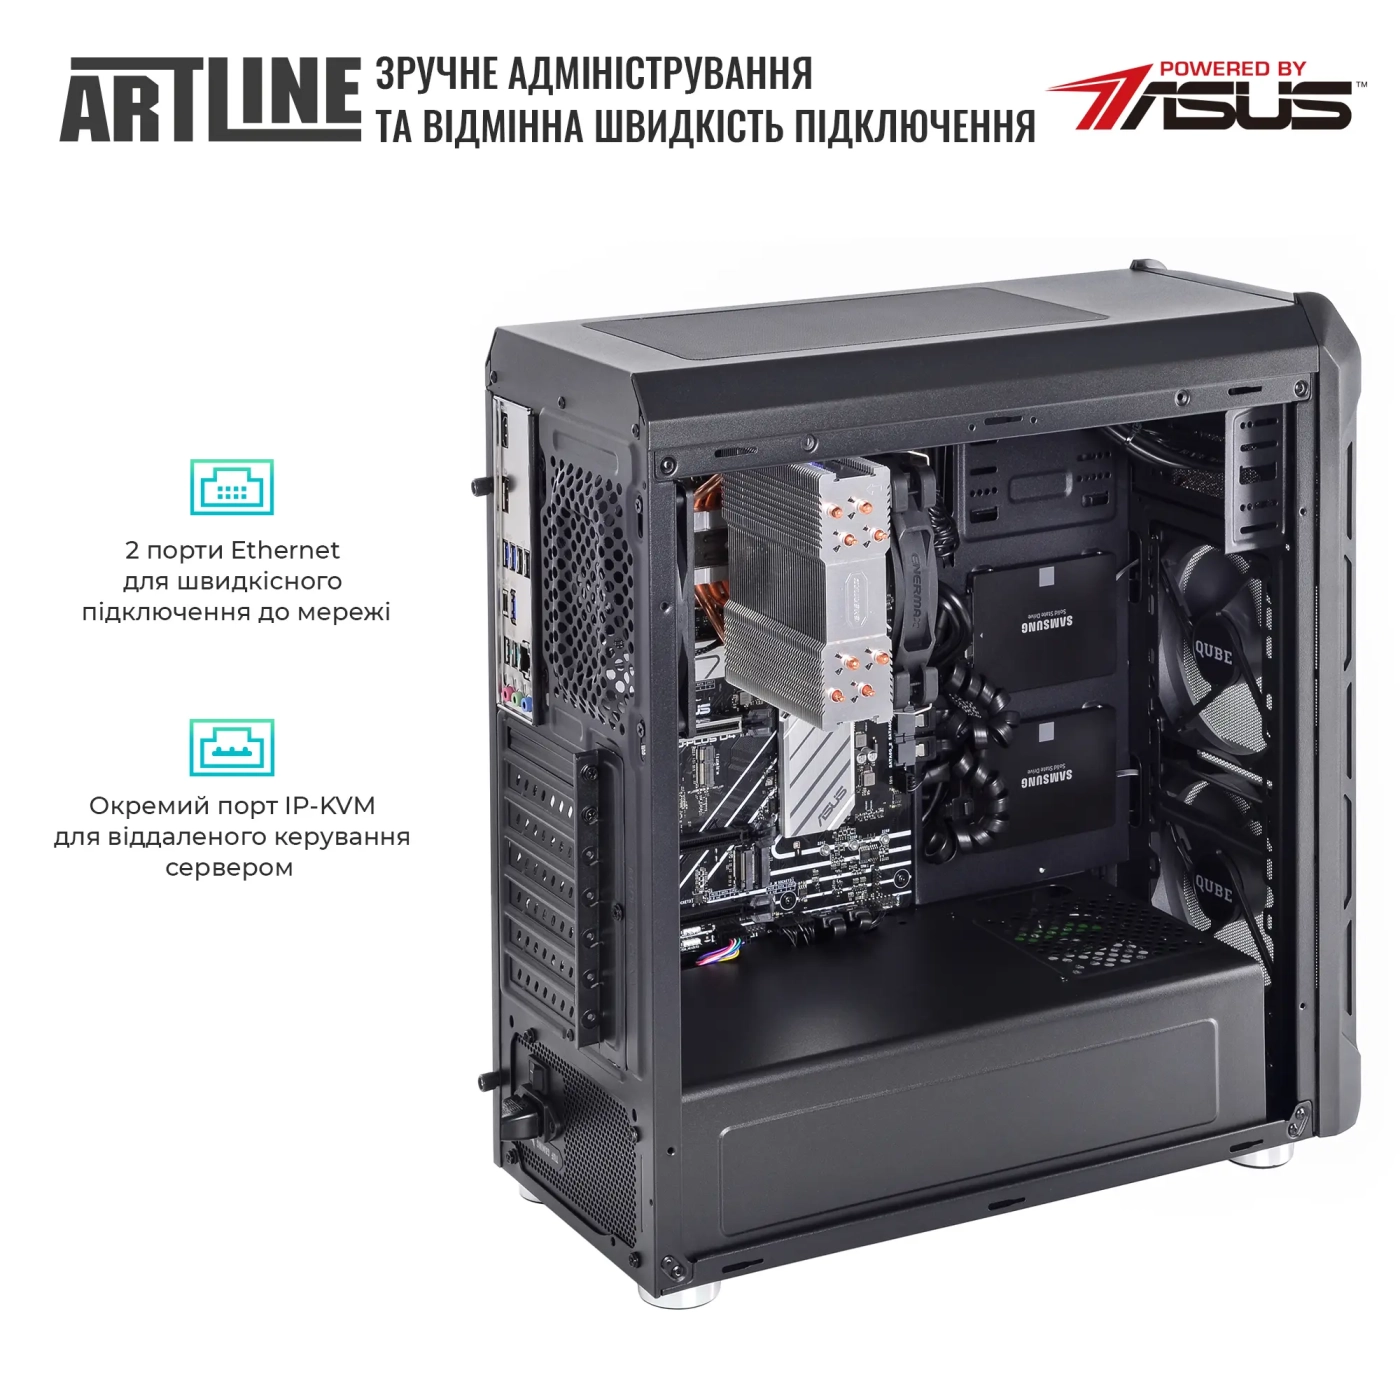 Купить Сервер ARTLINE Business T27 (T27v36) - фото 6